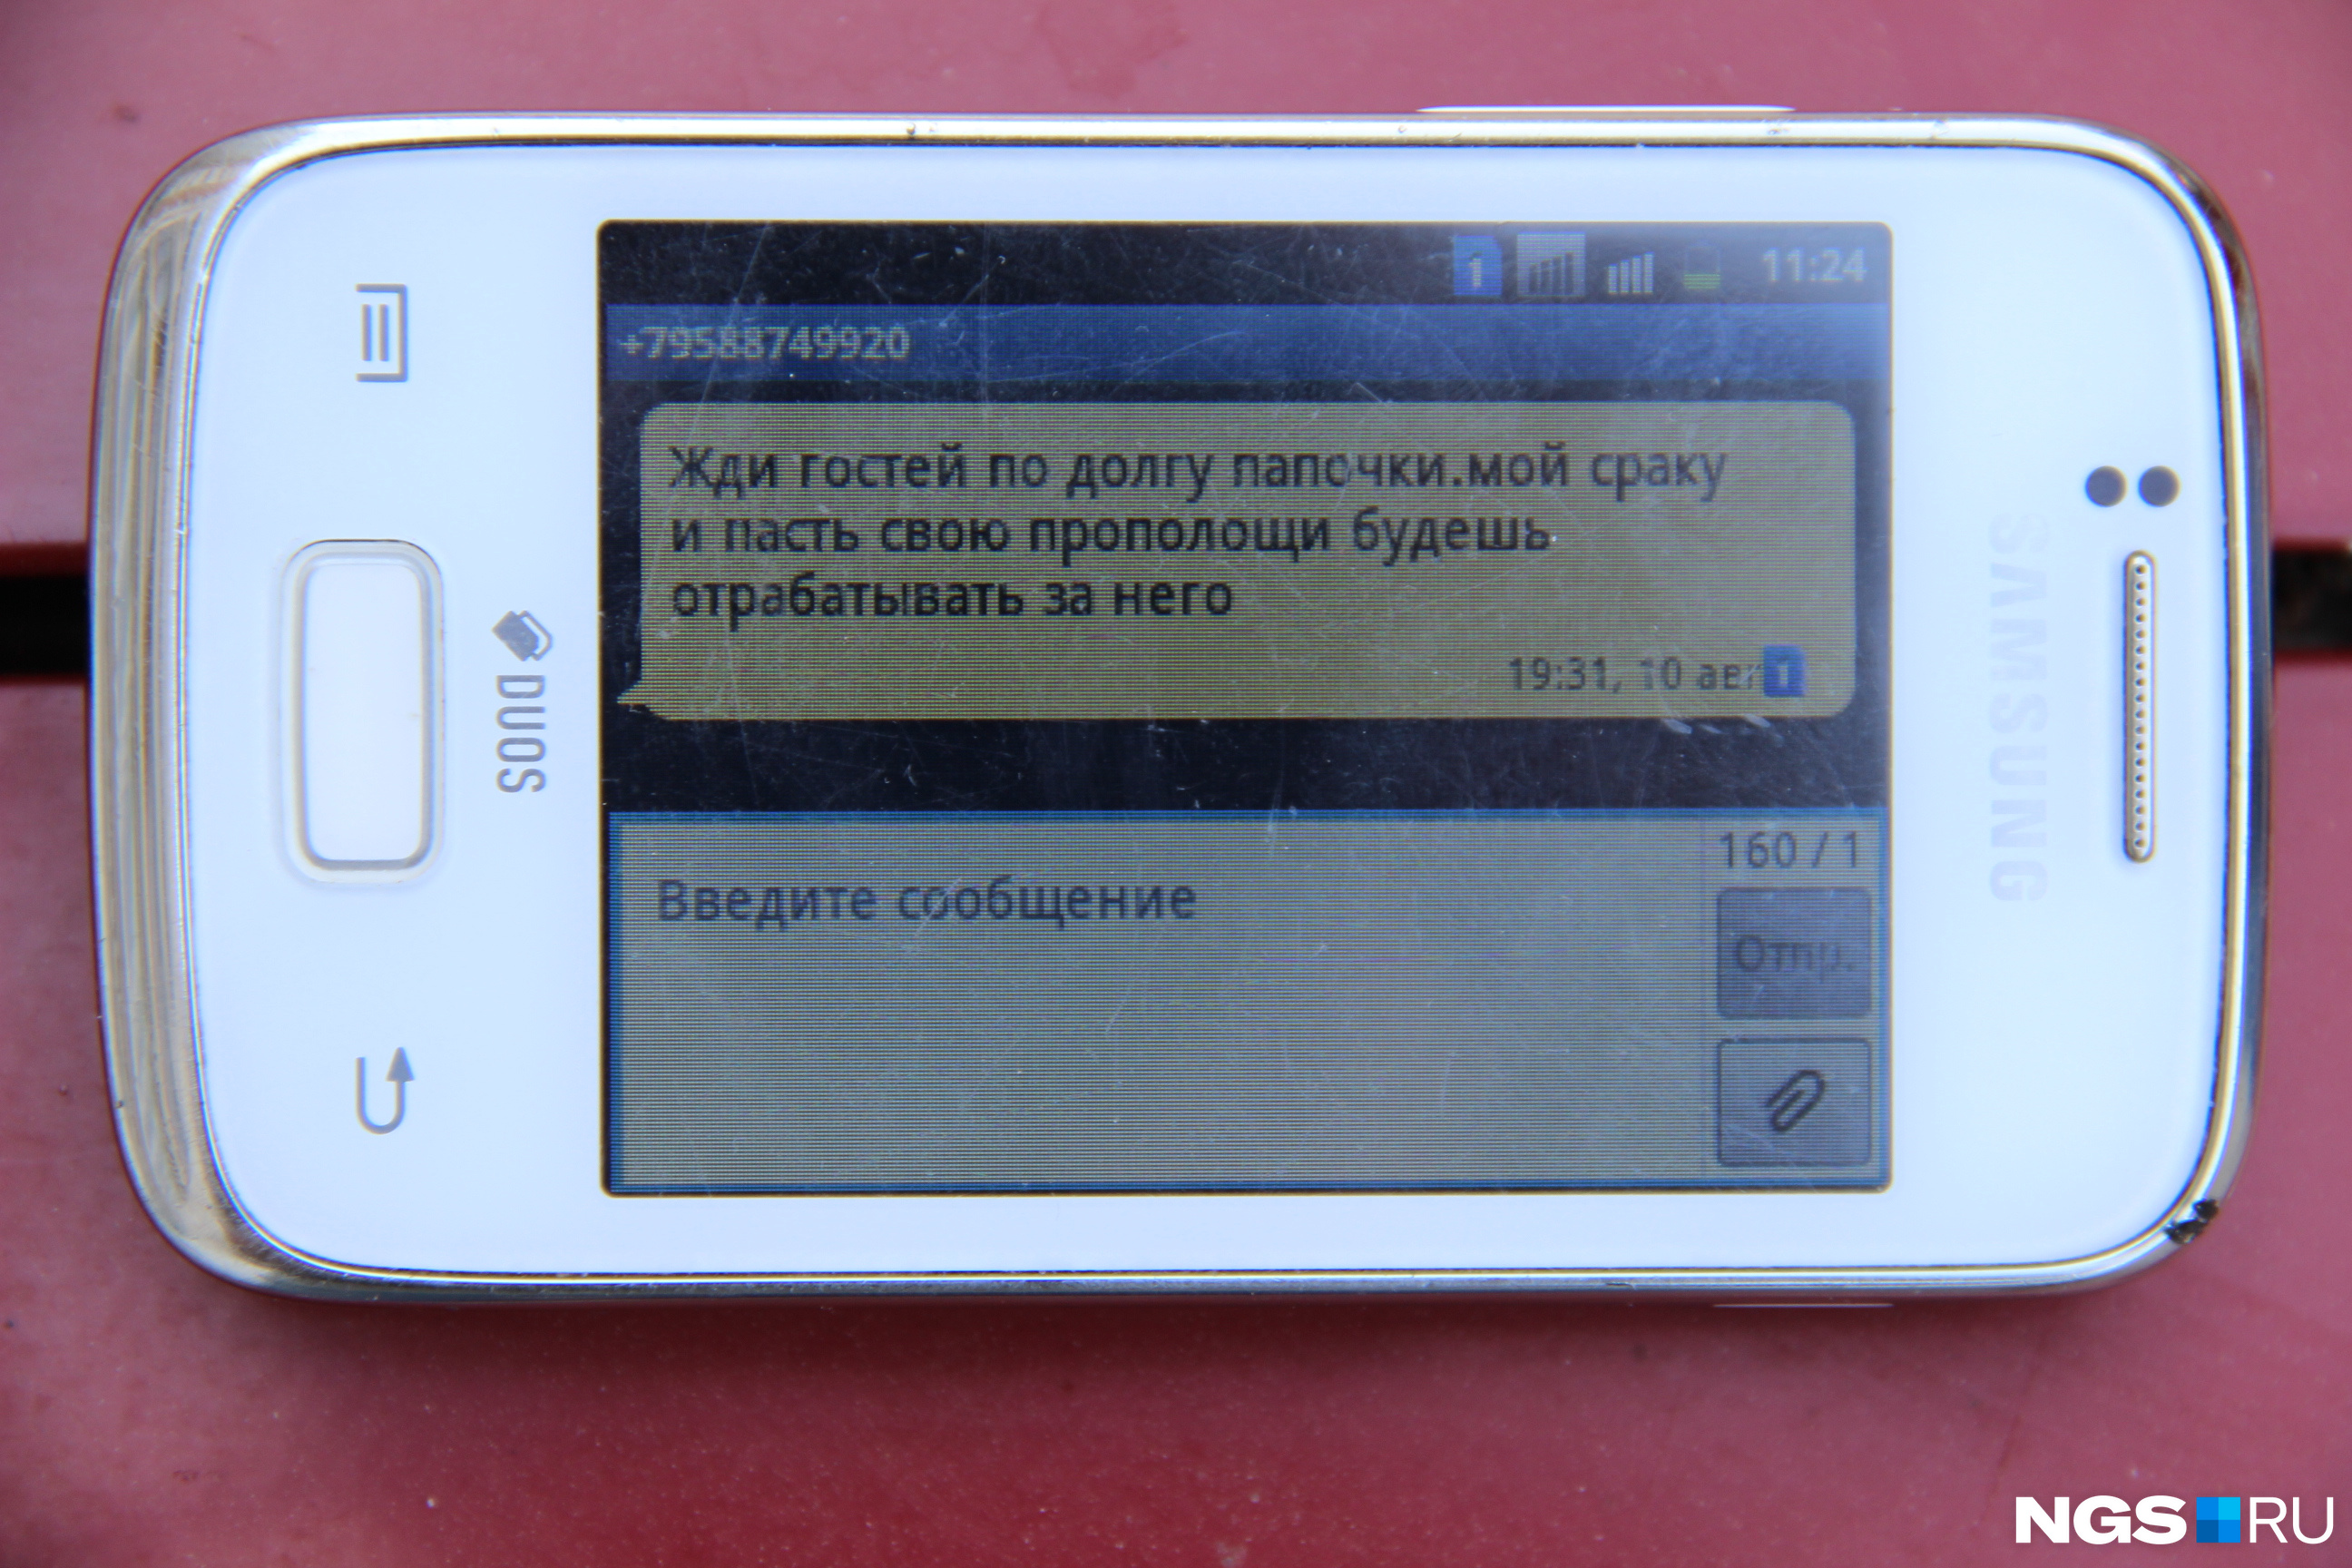 Грубое СМС с угрозой, которое получила молодая женщина <br><br>